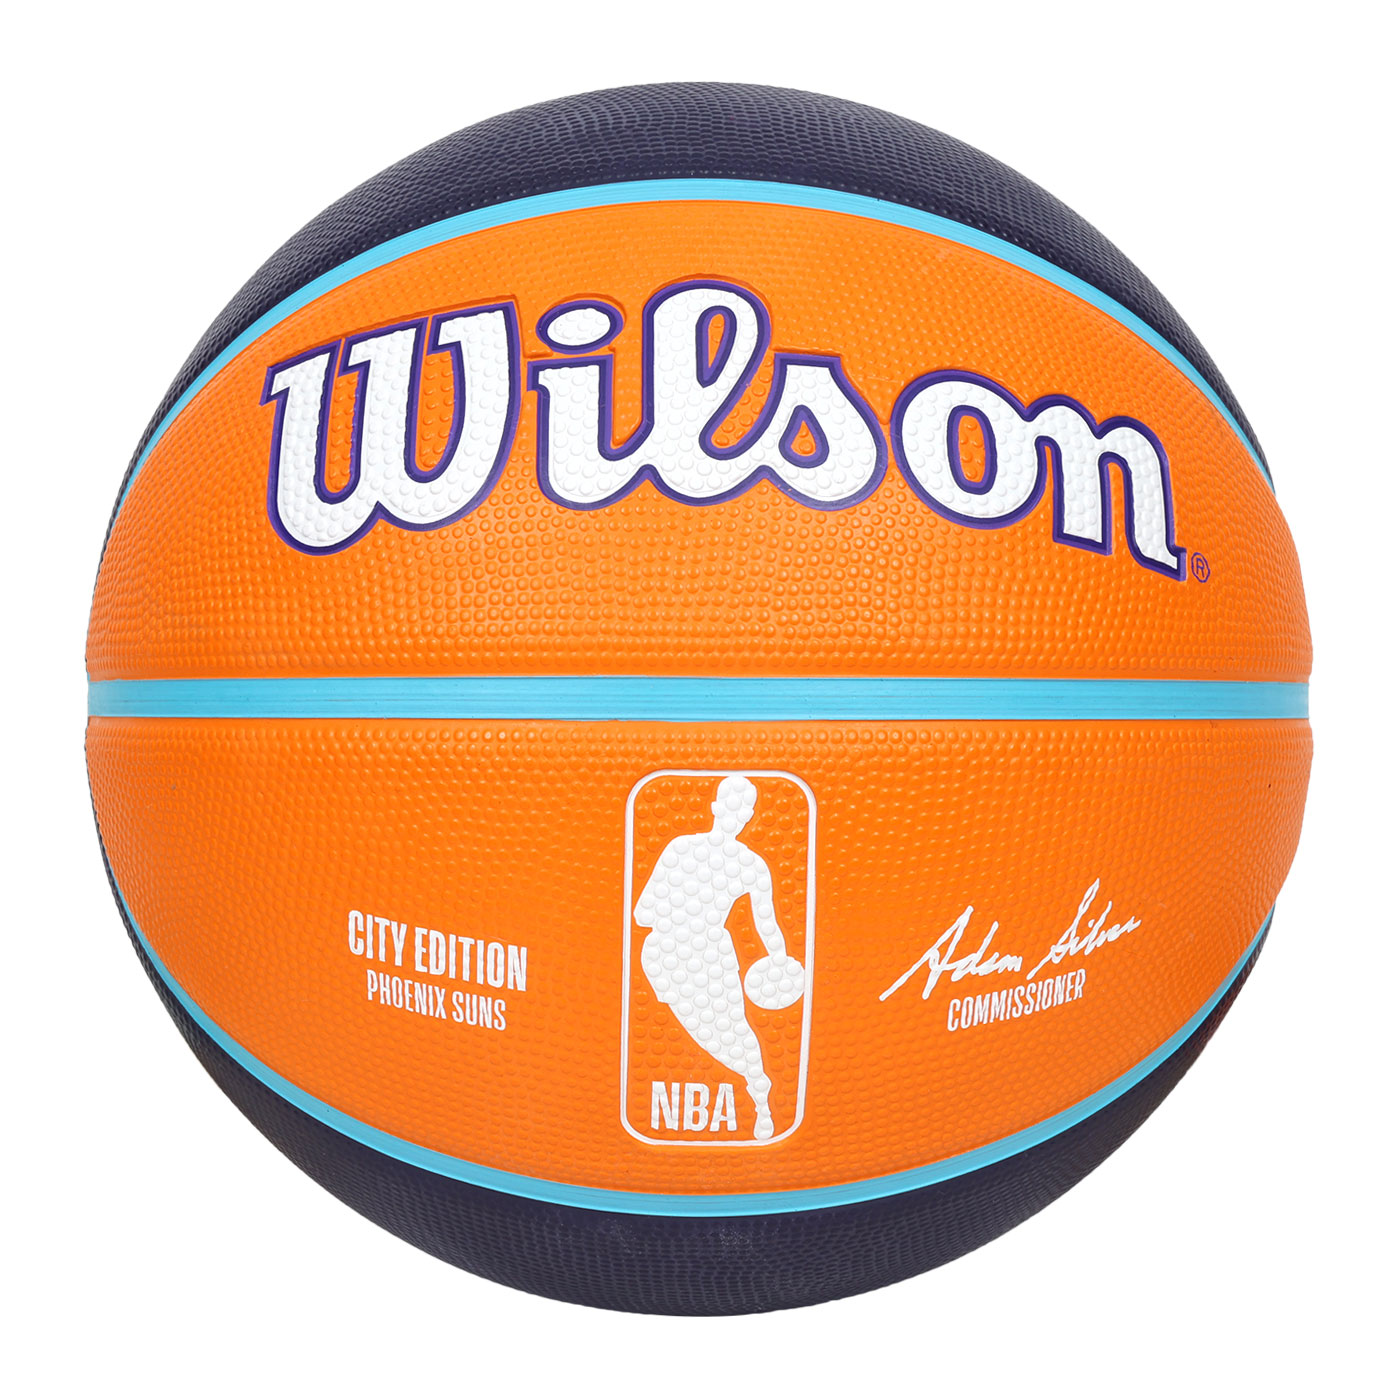 WILSON NBA城市系列-太陽-橡膠籃球#7  WZ4024224XB7 - 橘丈青白藍